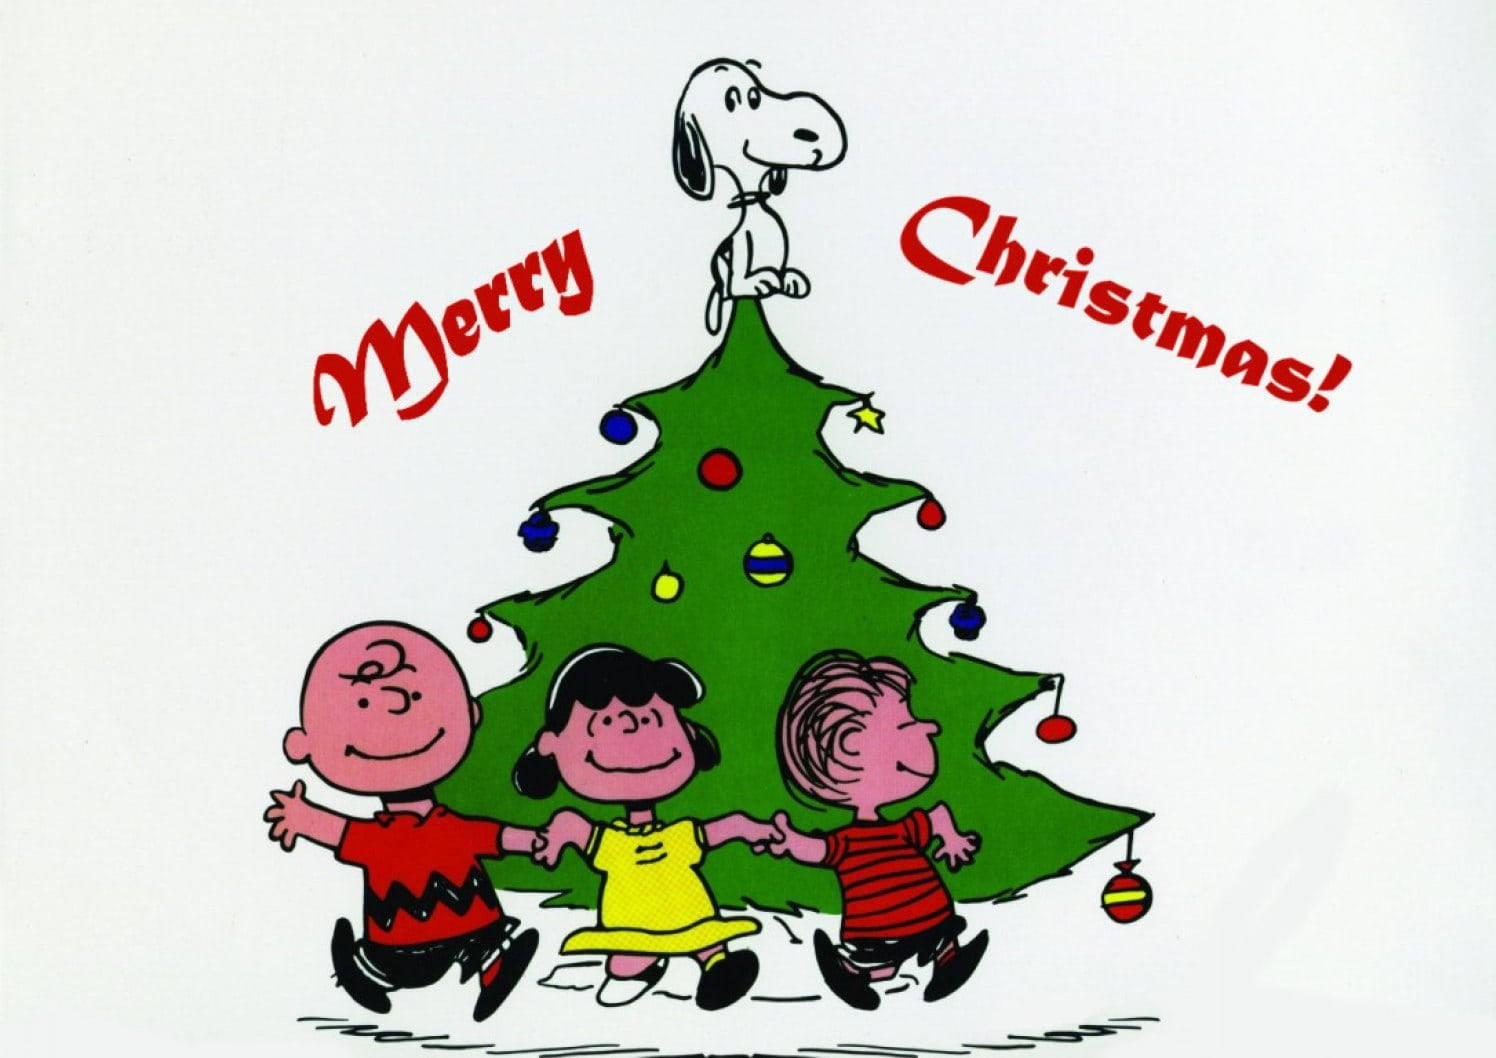 Feiernsie Weihnachten Mit Snoopy Auf Ihrem Iphone. Wallpaper